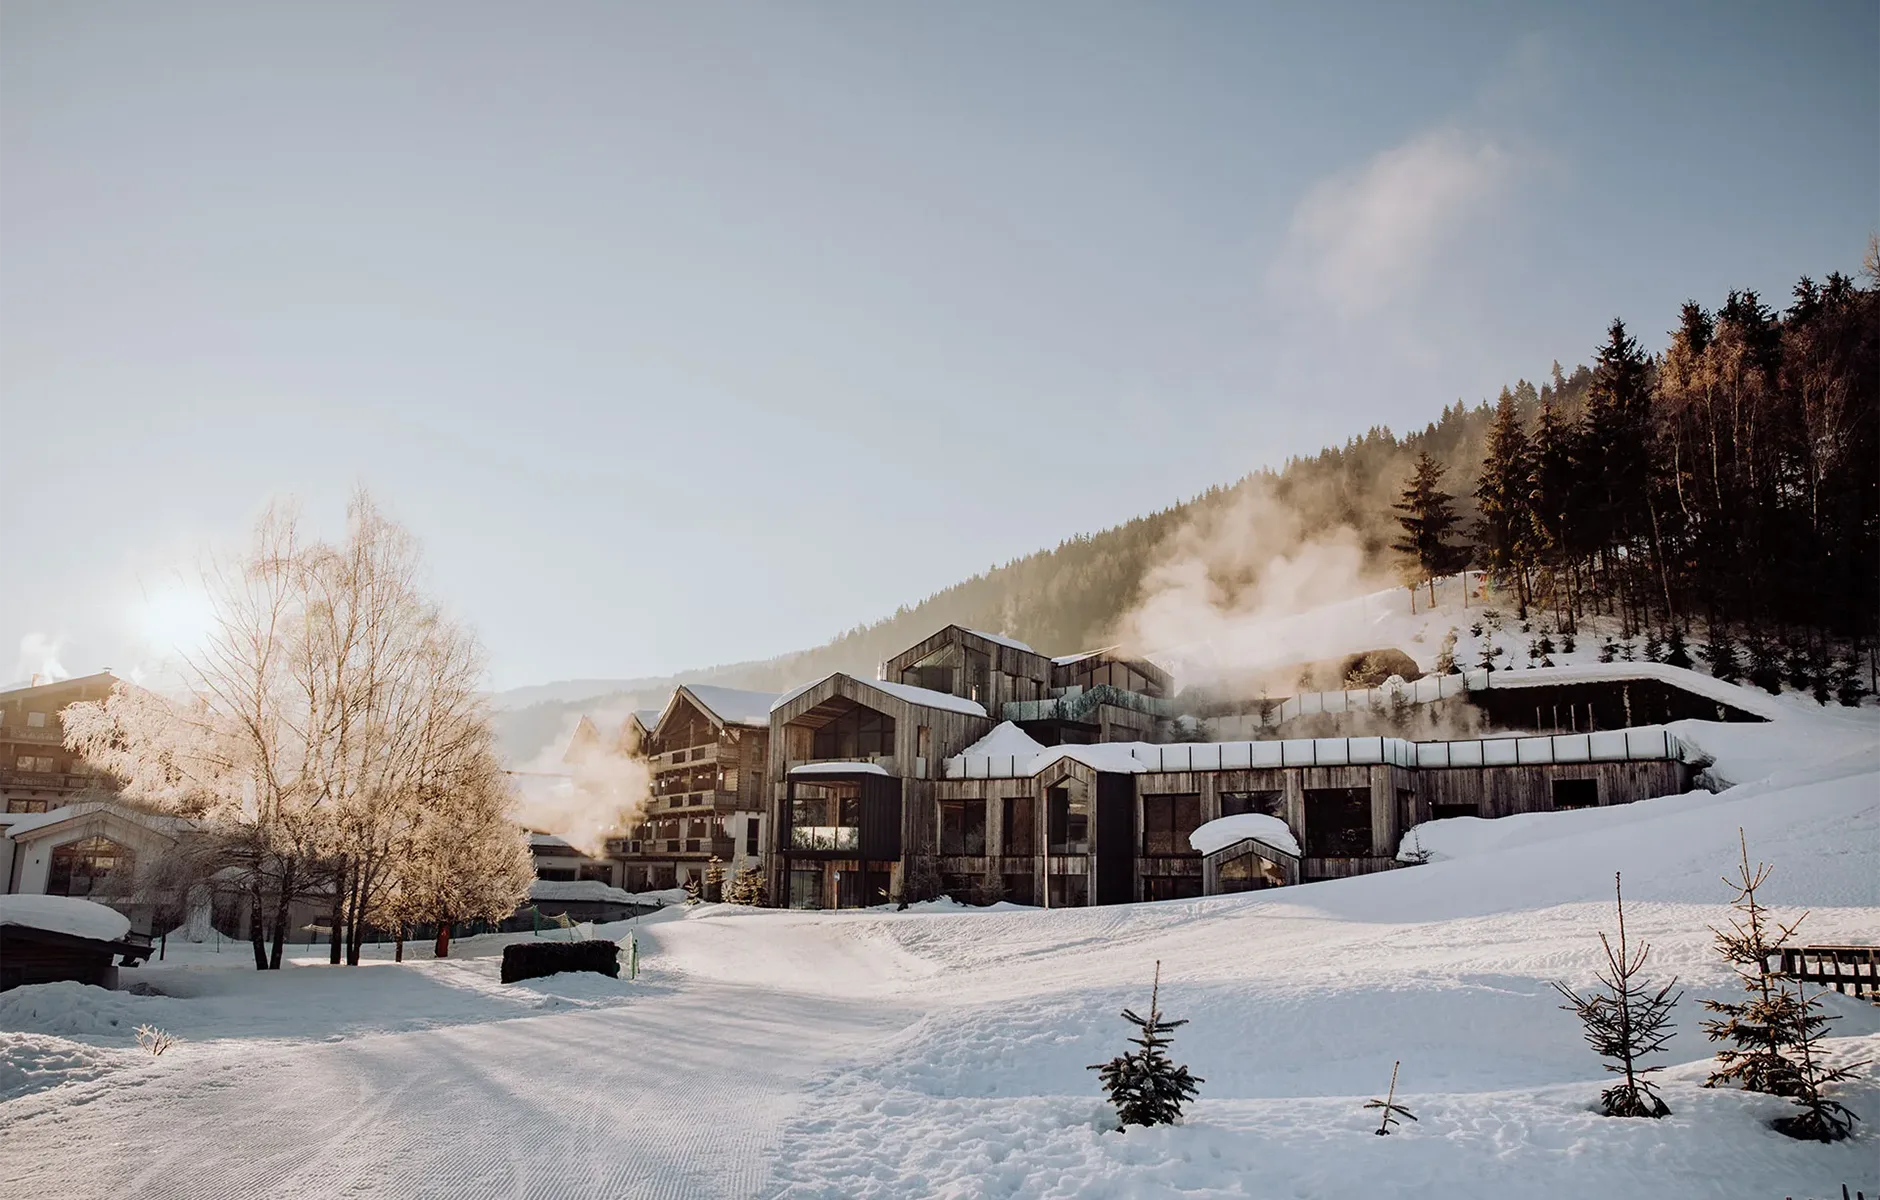 Aussenfassade eines Alpin Hotels im Winter